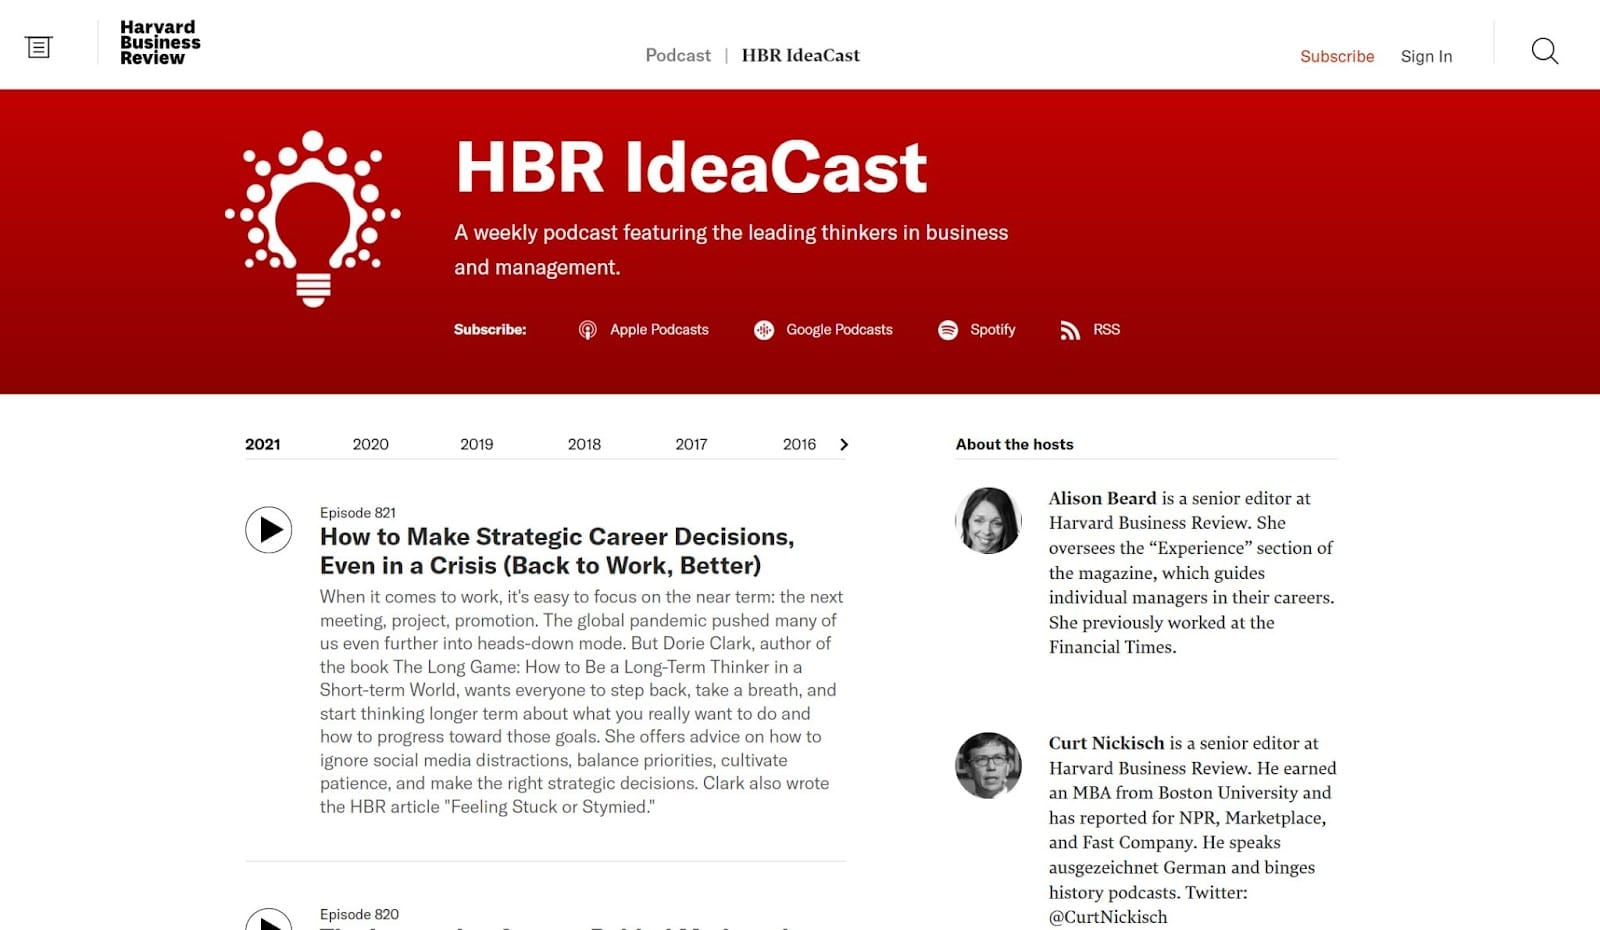 HBR IdeaCast 播客主页的屏幕截图